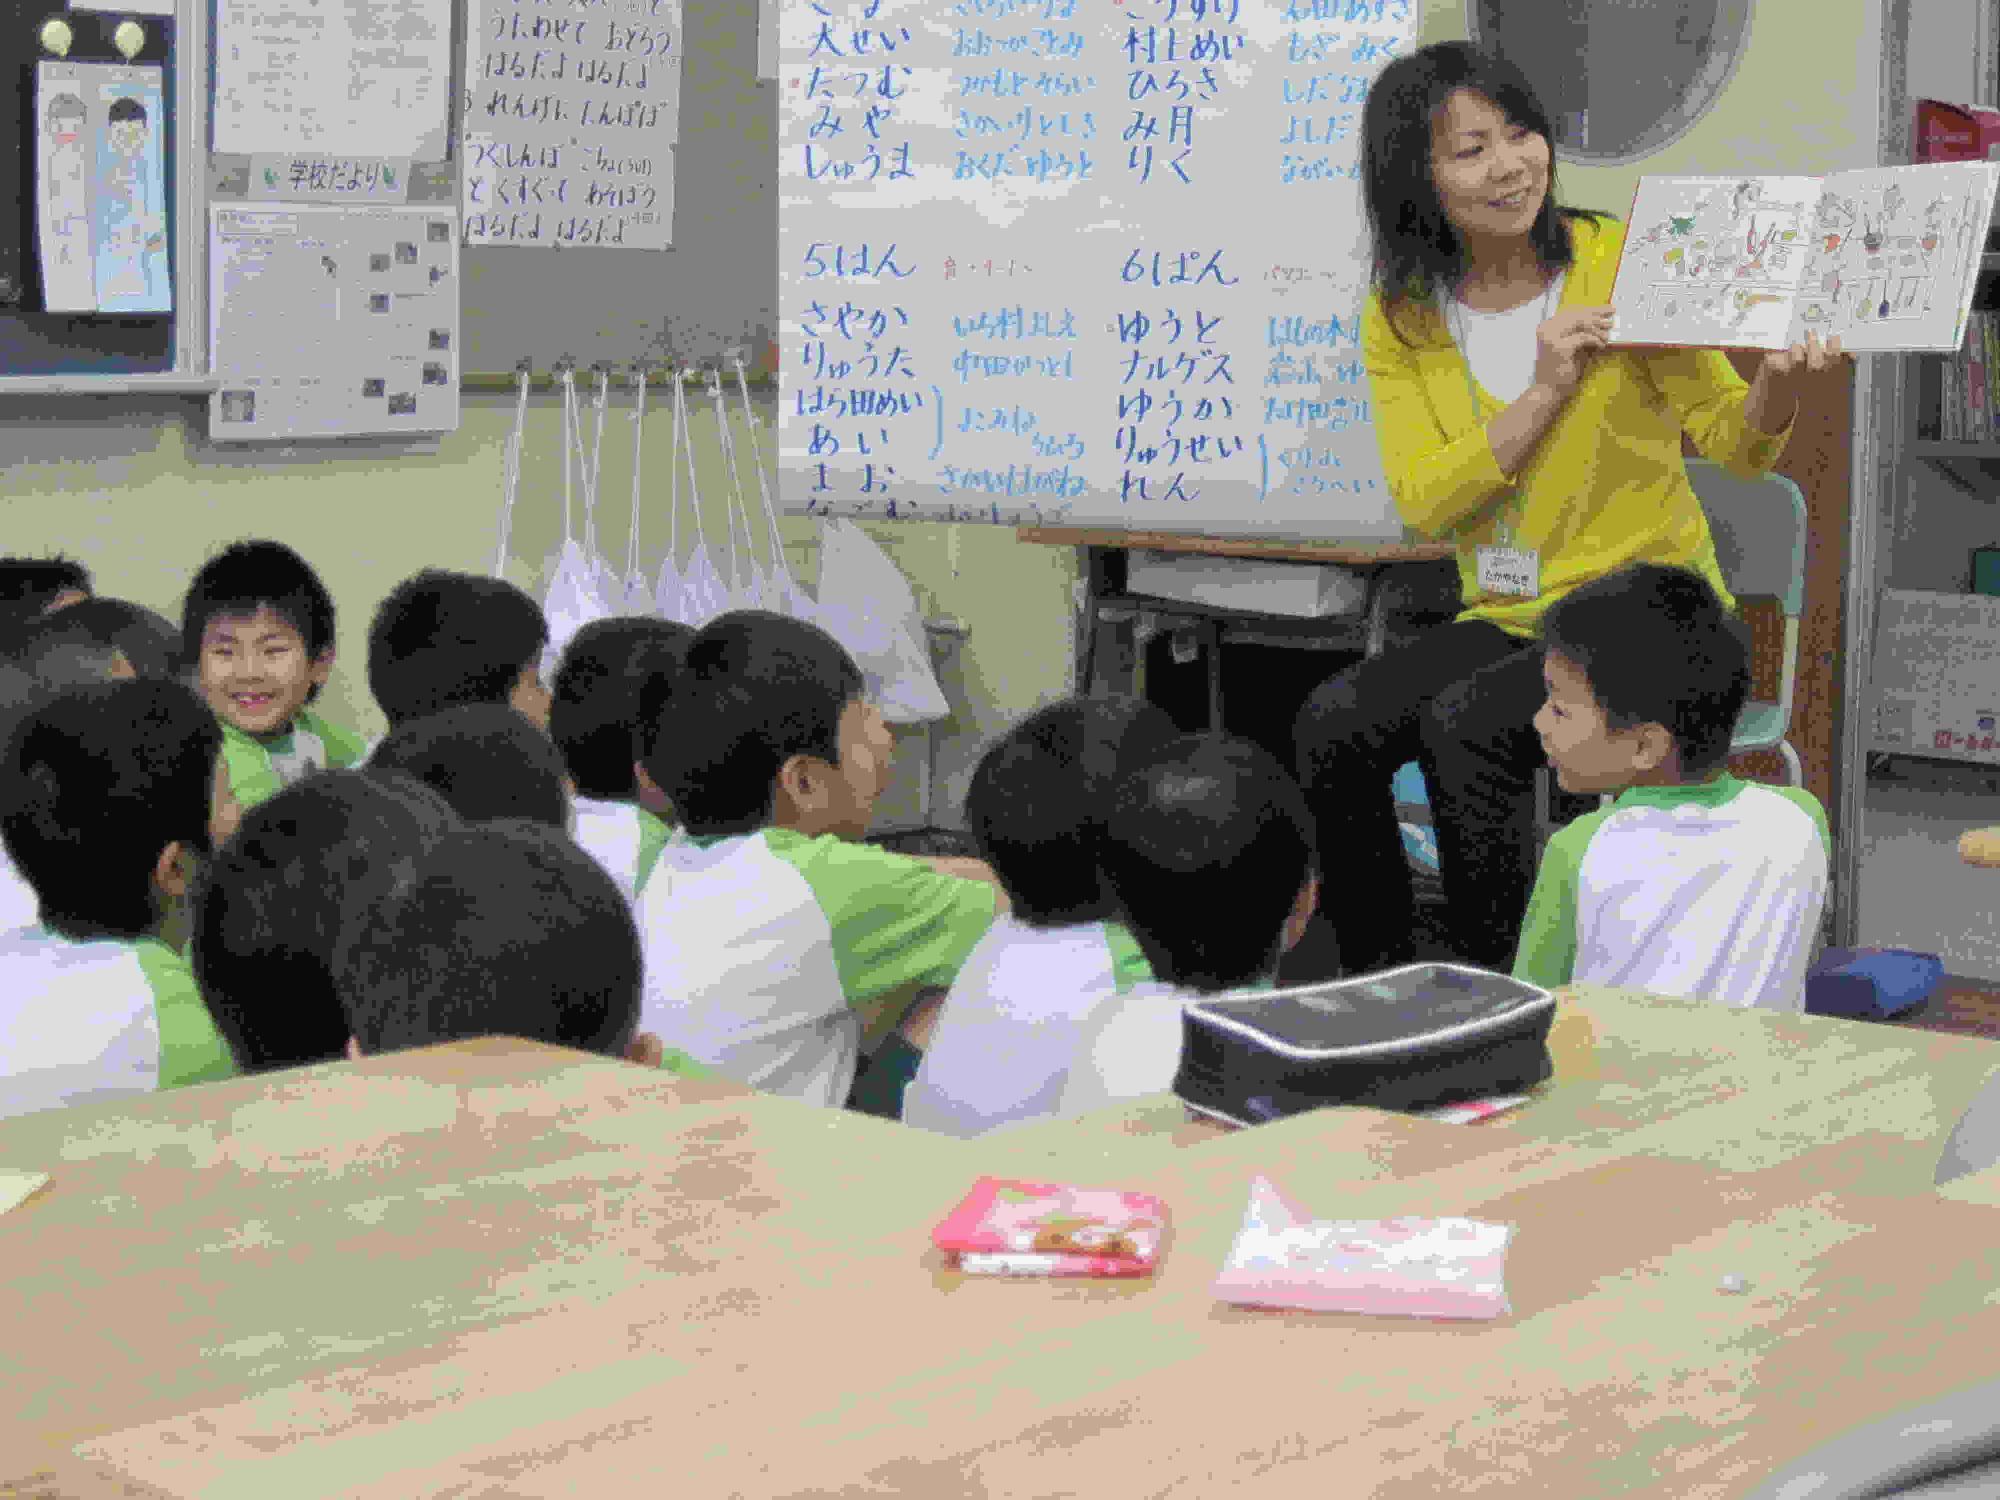 教室内前方で、椅子に座り絵本を開きながら、読み聞かせをするボランティアの方と、笑顔で読み聞かせを聞く児童たちの写真